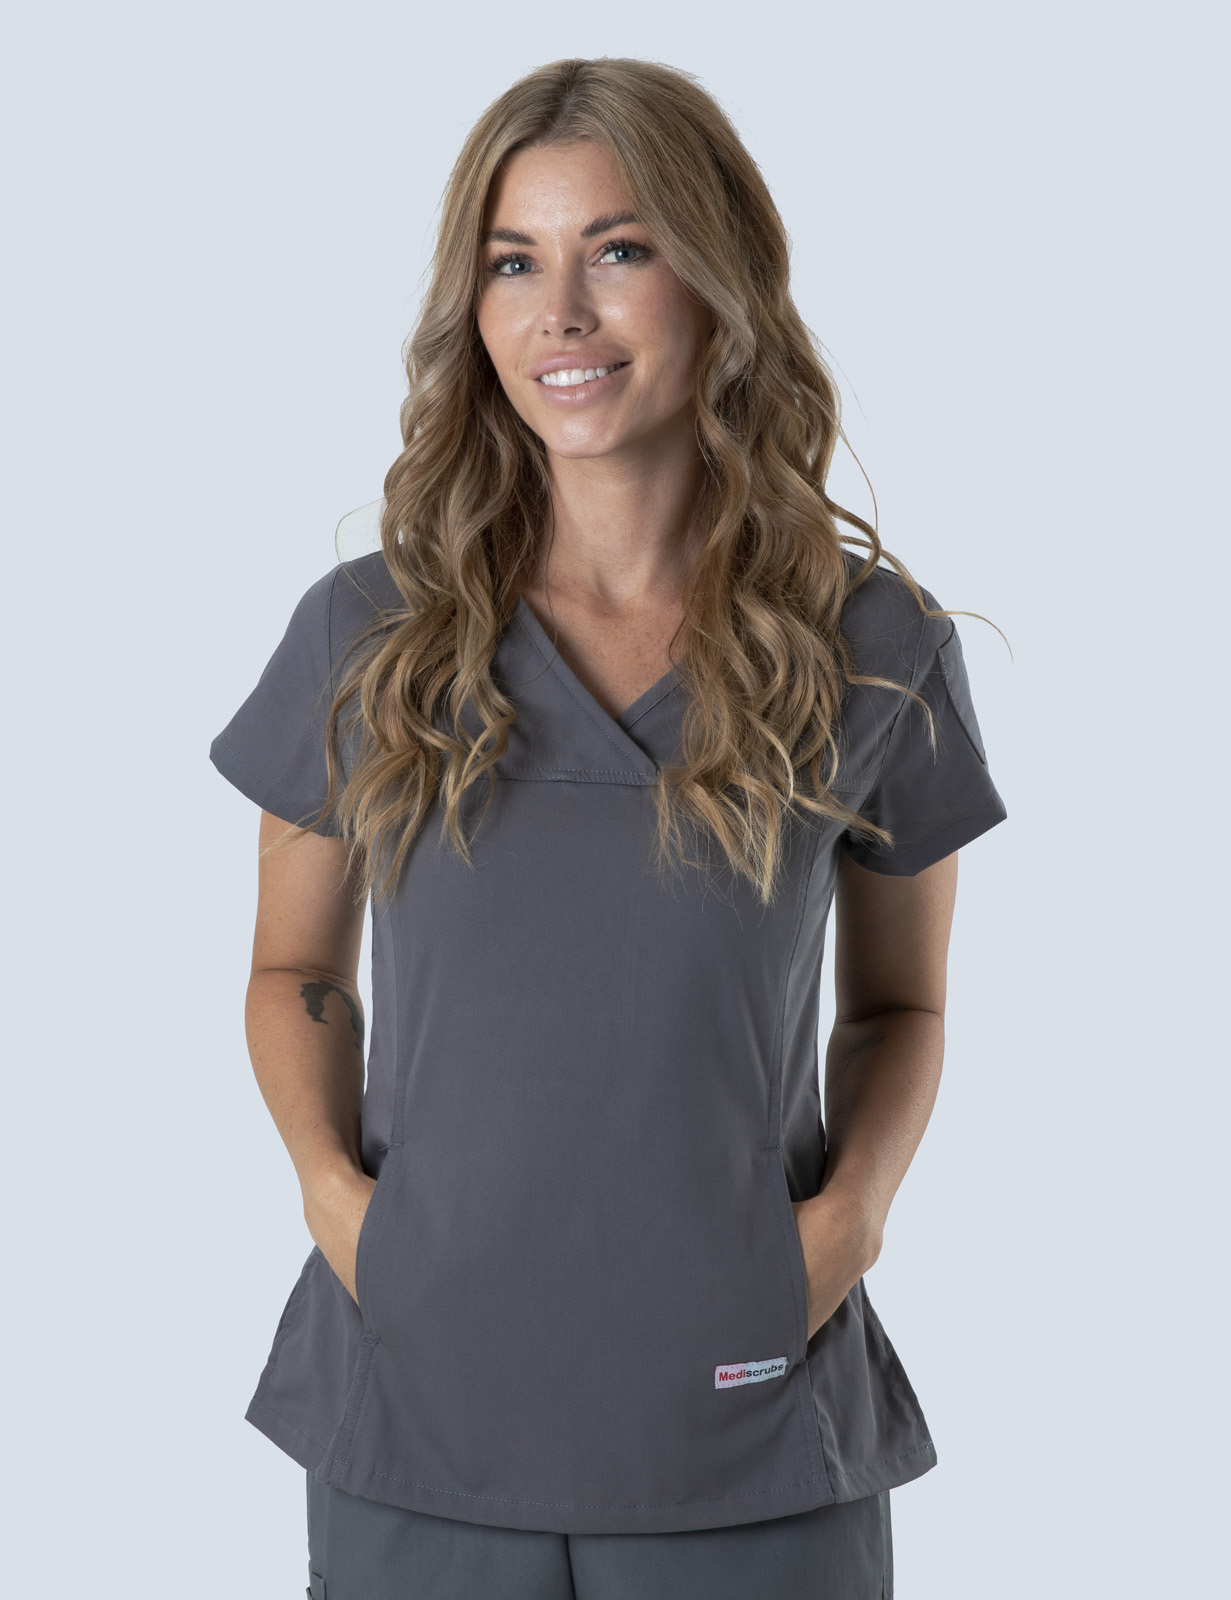 Queensland Children's Hospital Emergency Department Registrar Uniform Top Bundle  (Women's Fit Top in Steel Grey  incl Logos)